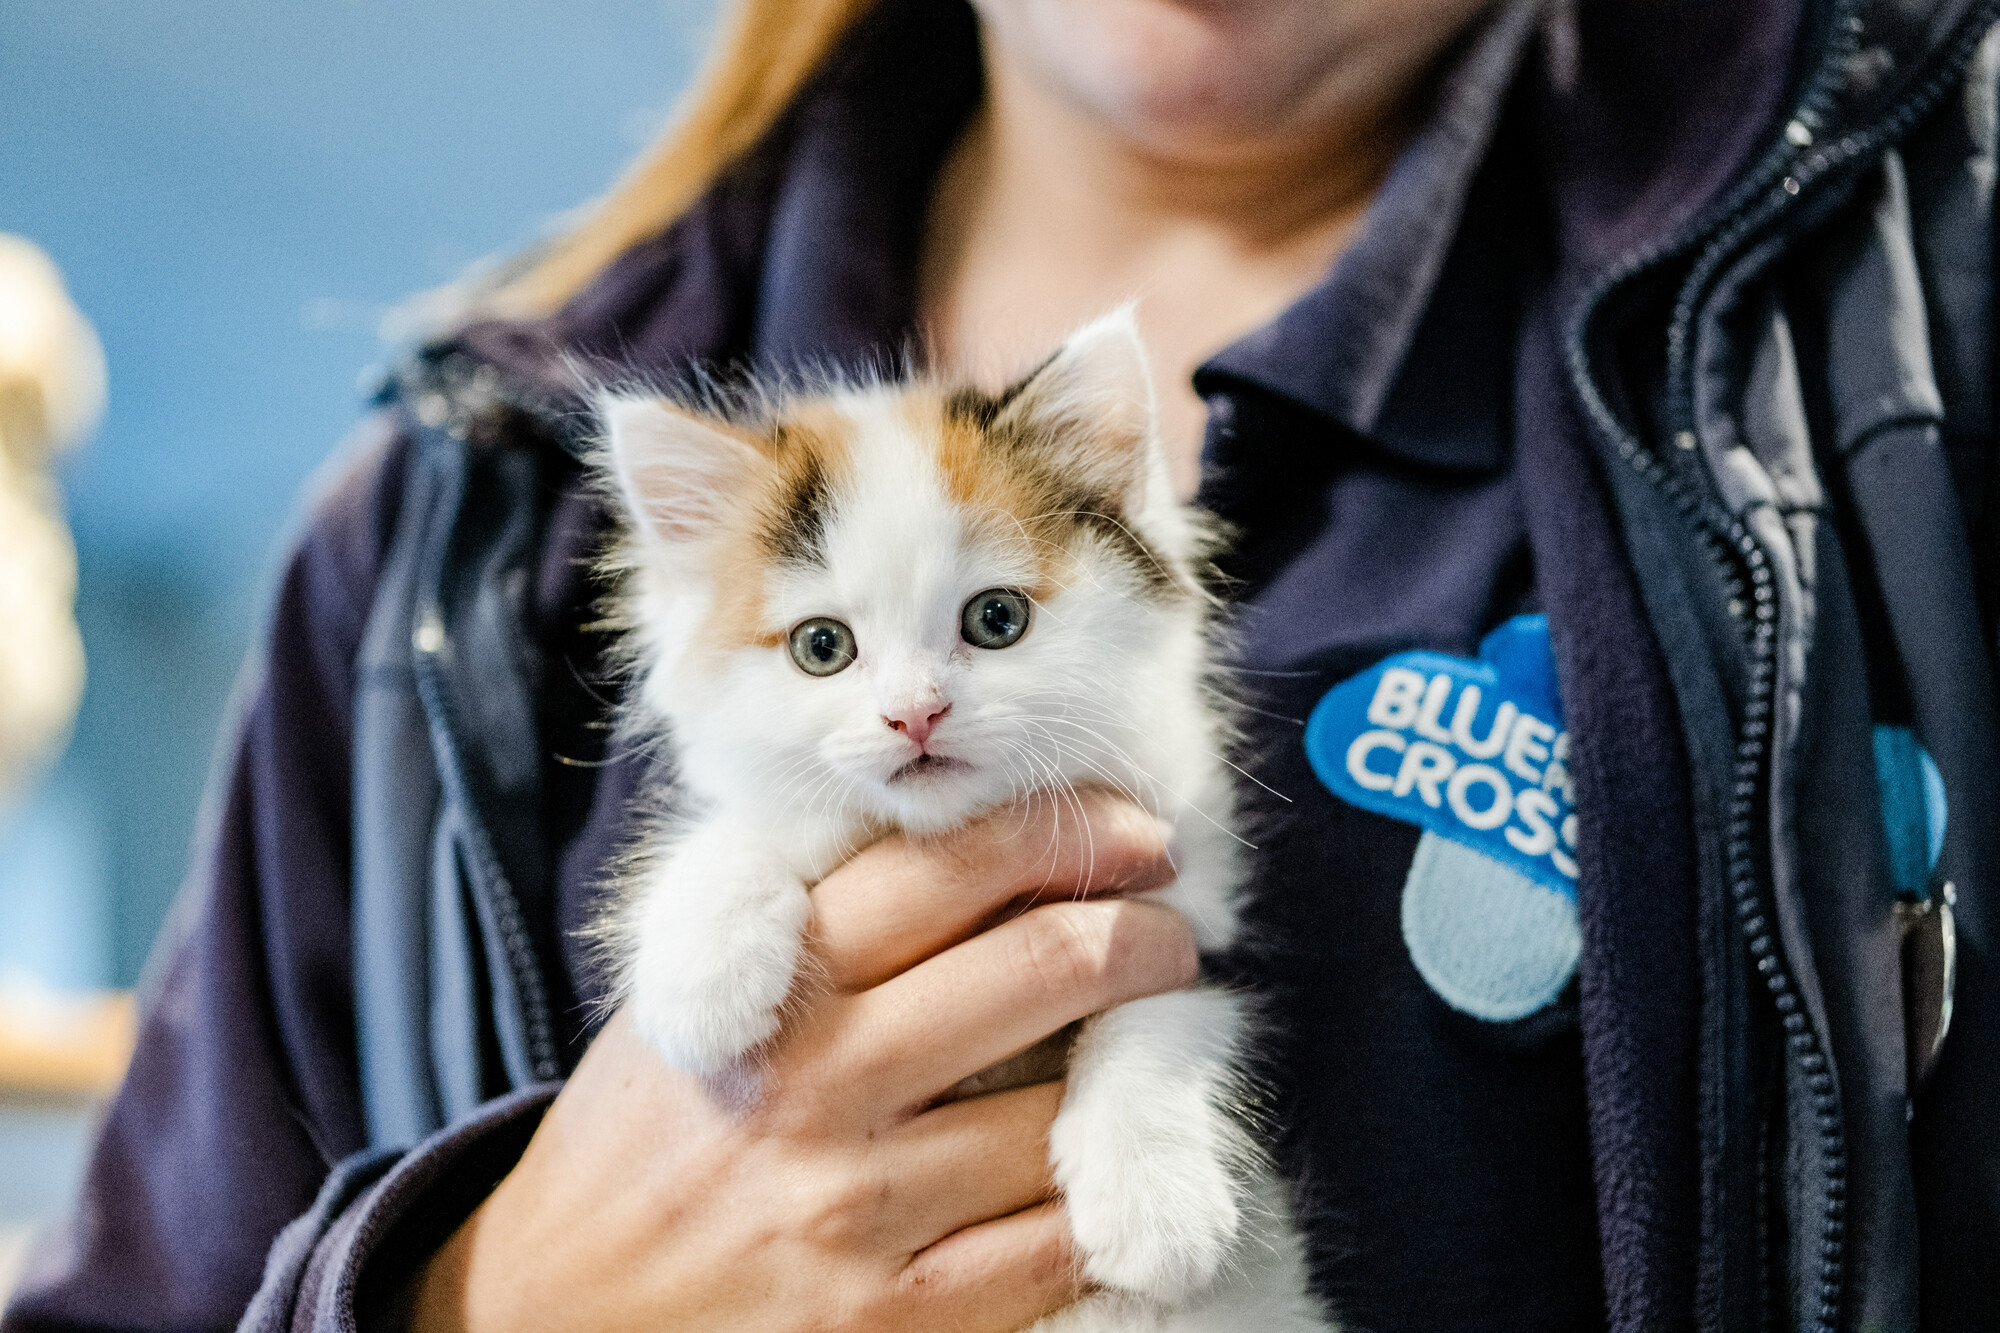 Kitten Widget being held by Blue Cross team member